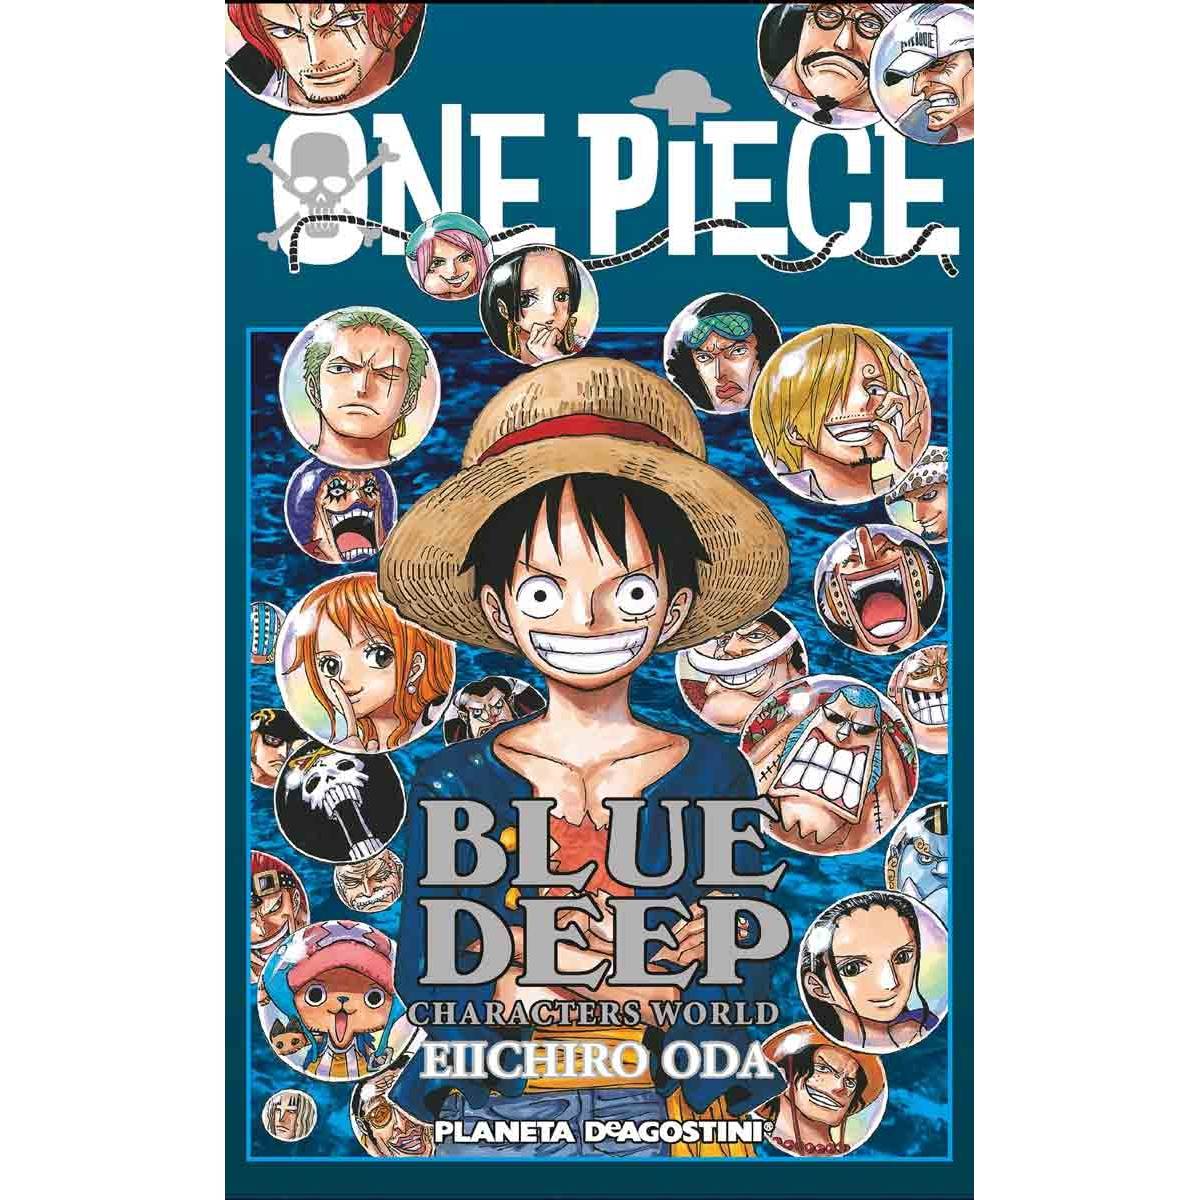 Productos y merchandising de One Piece - Universo de animes